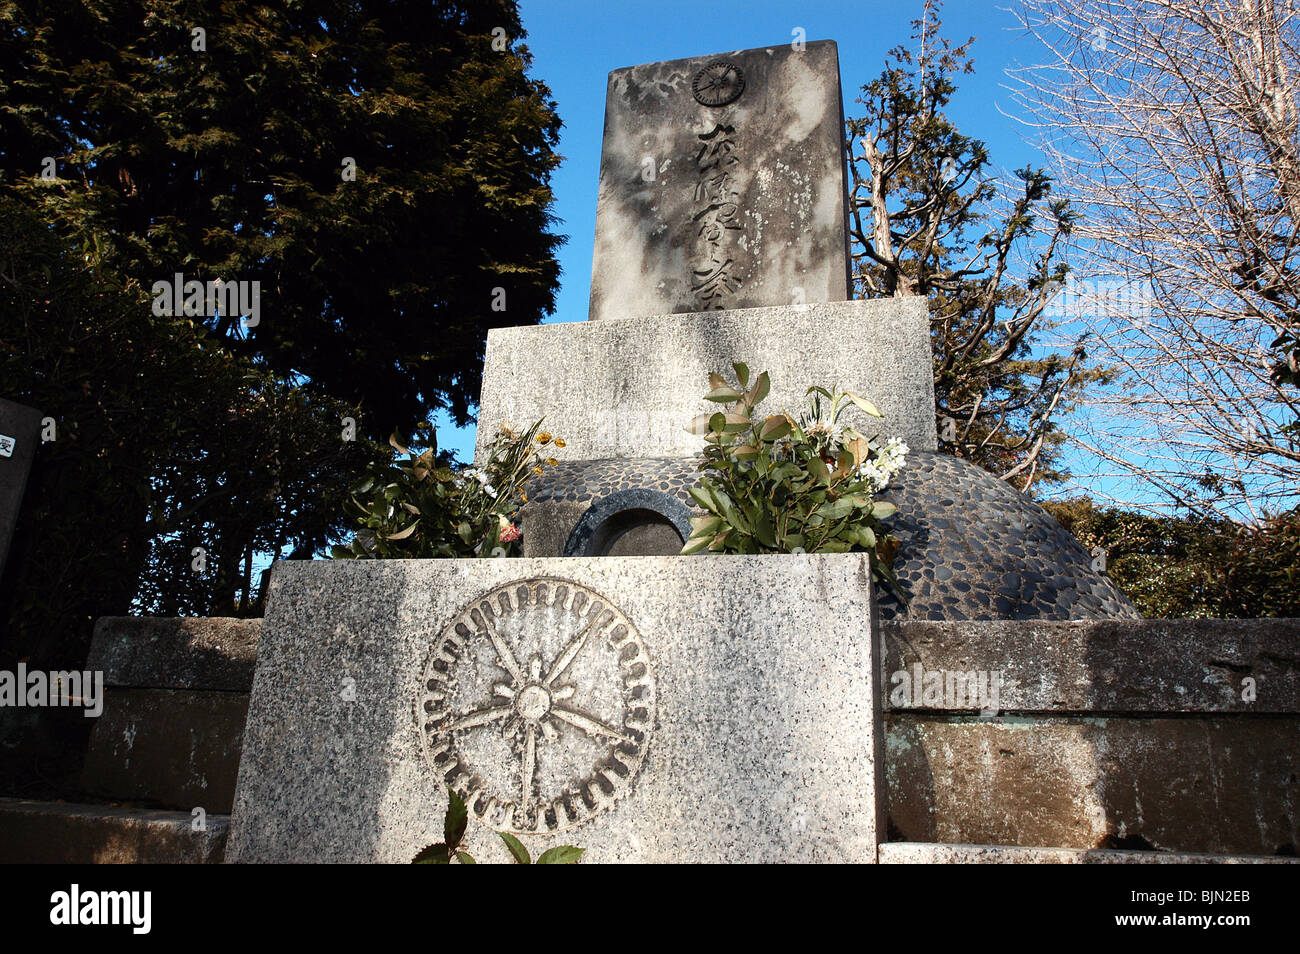 Photo shows the grave of Japan's war-time leader Gen. Hideki Tojo in Tokyo. Stock Photo